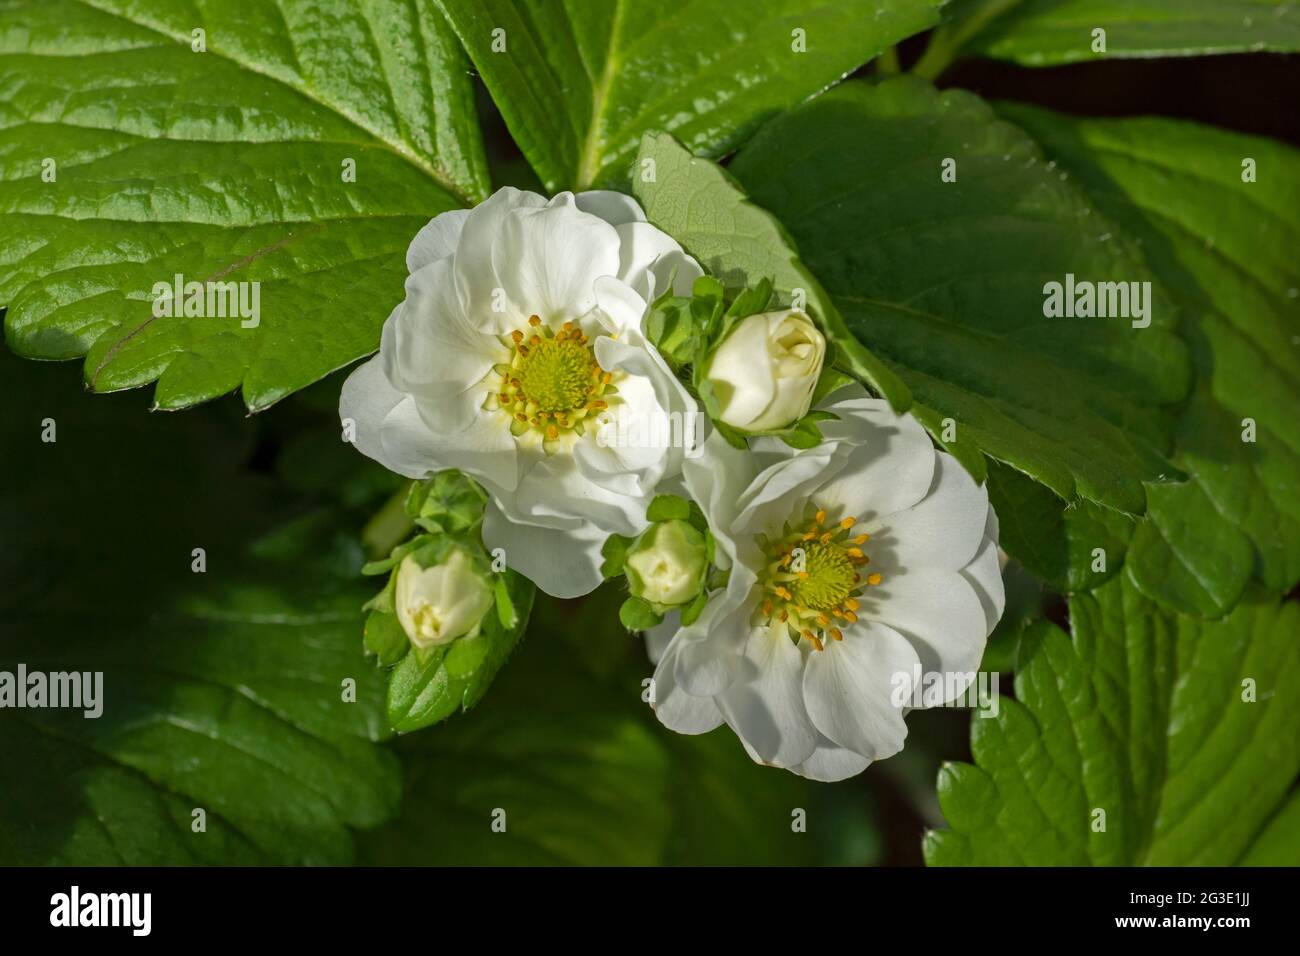 Weiß gelb-zentrierte Blüten der Erdbeere (Fragaria ananassa) auf natürlichem grünem Blattgrund. Konzept des Anbaus eigener gesunder Lebensmittel Stockfoto